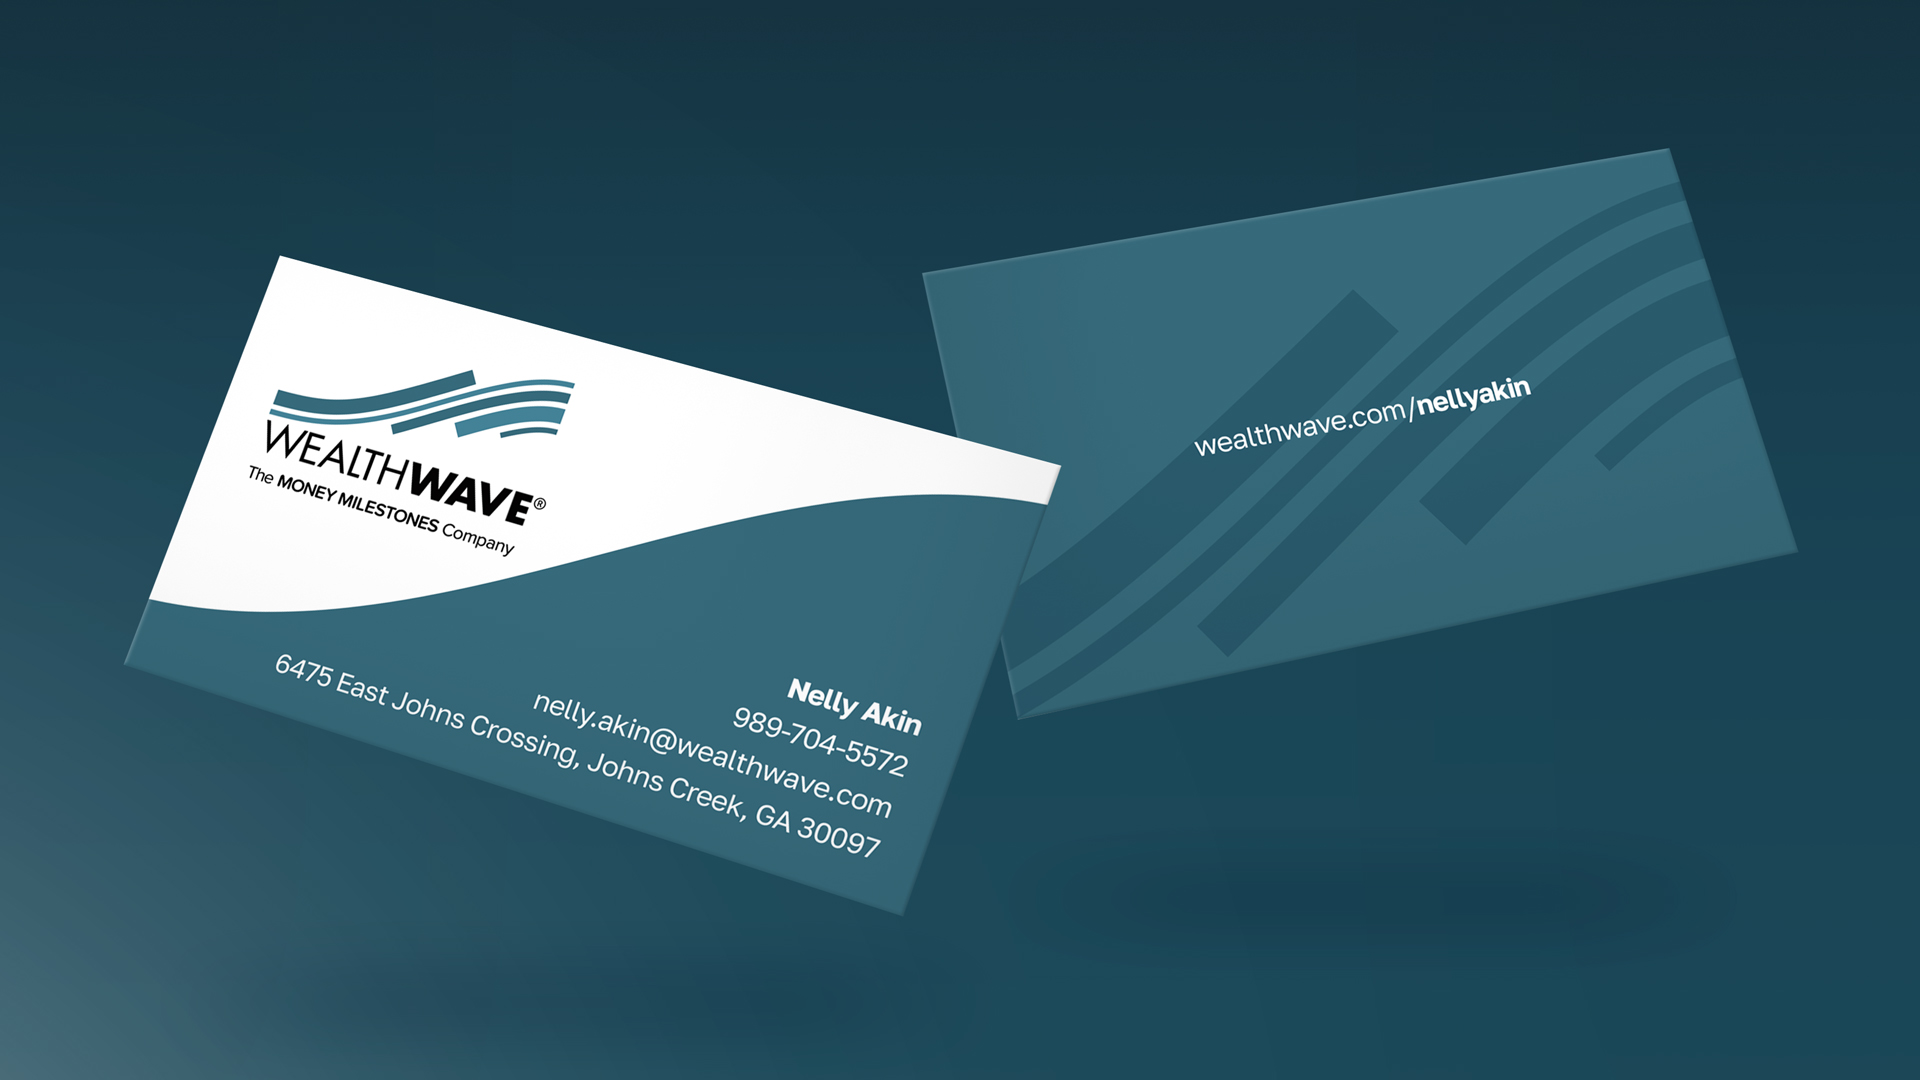 Les nouvelles cartes de visite WealthWave bleues sont disponibles dans le design classique